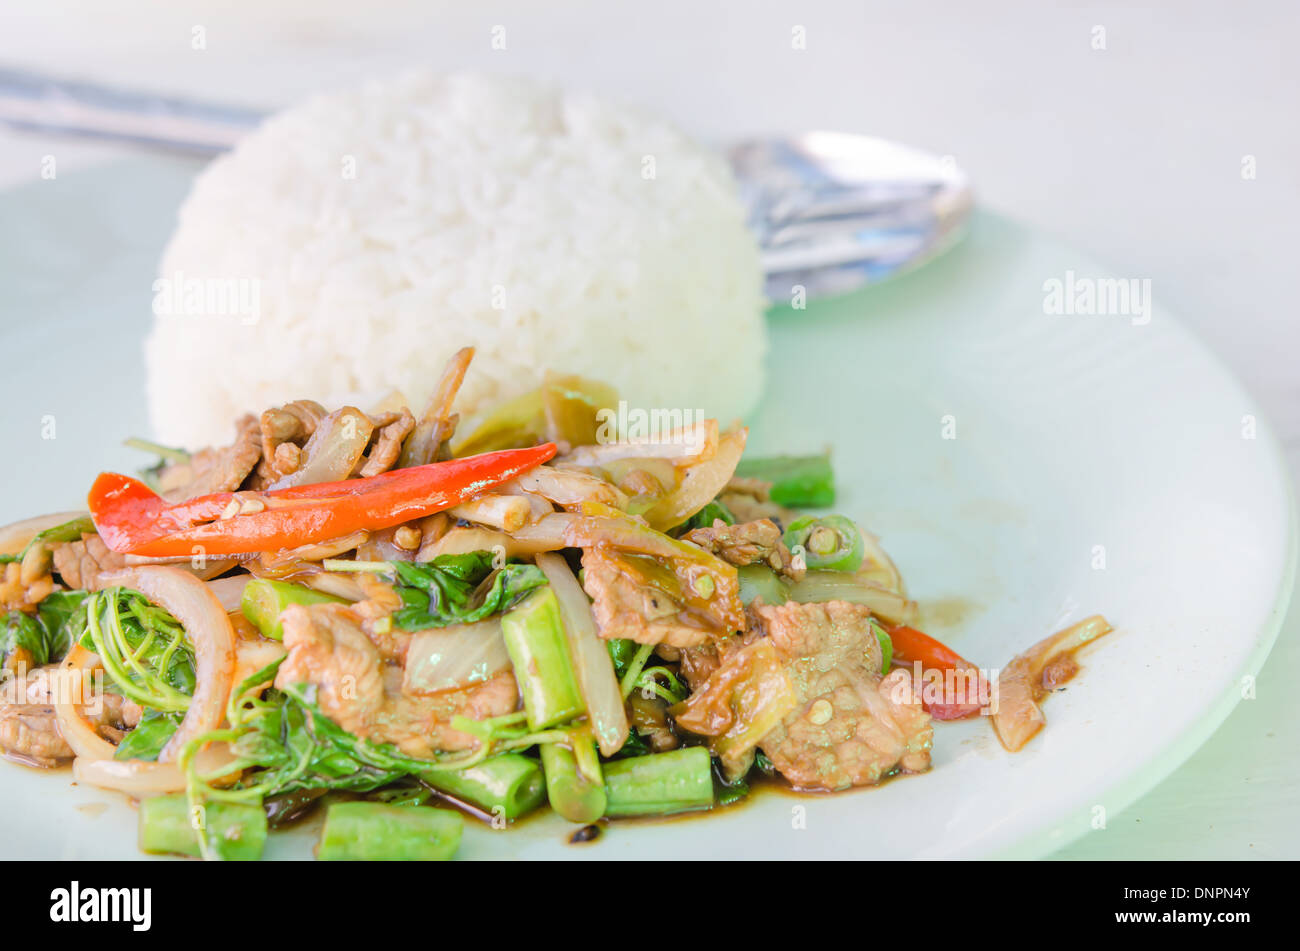 Mezcle la carne frita, salsa de curry y verduras servido con arroz al vapor Foto de stock